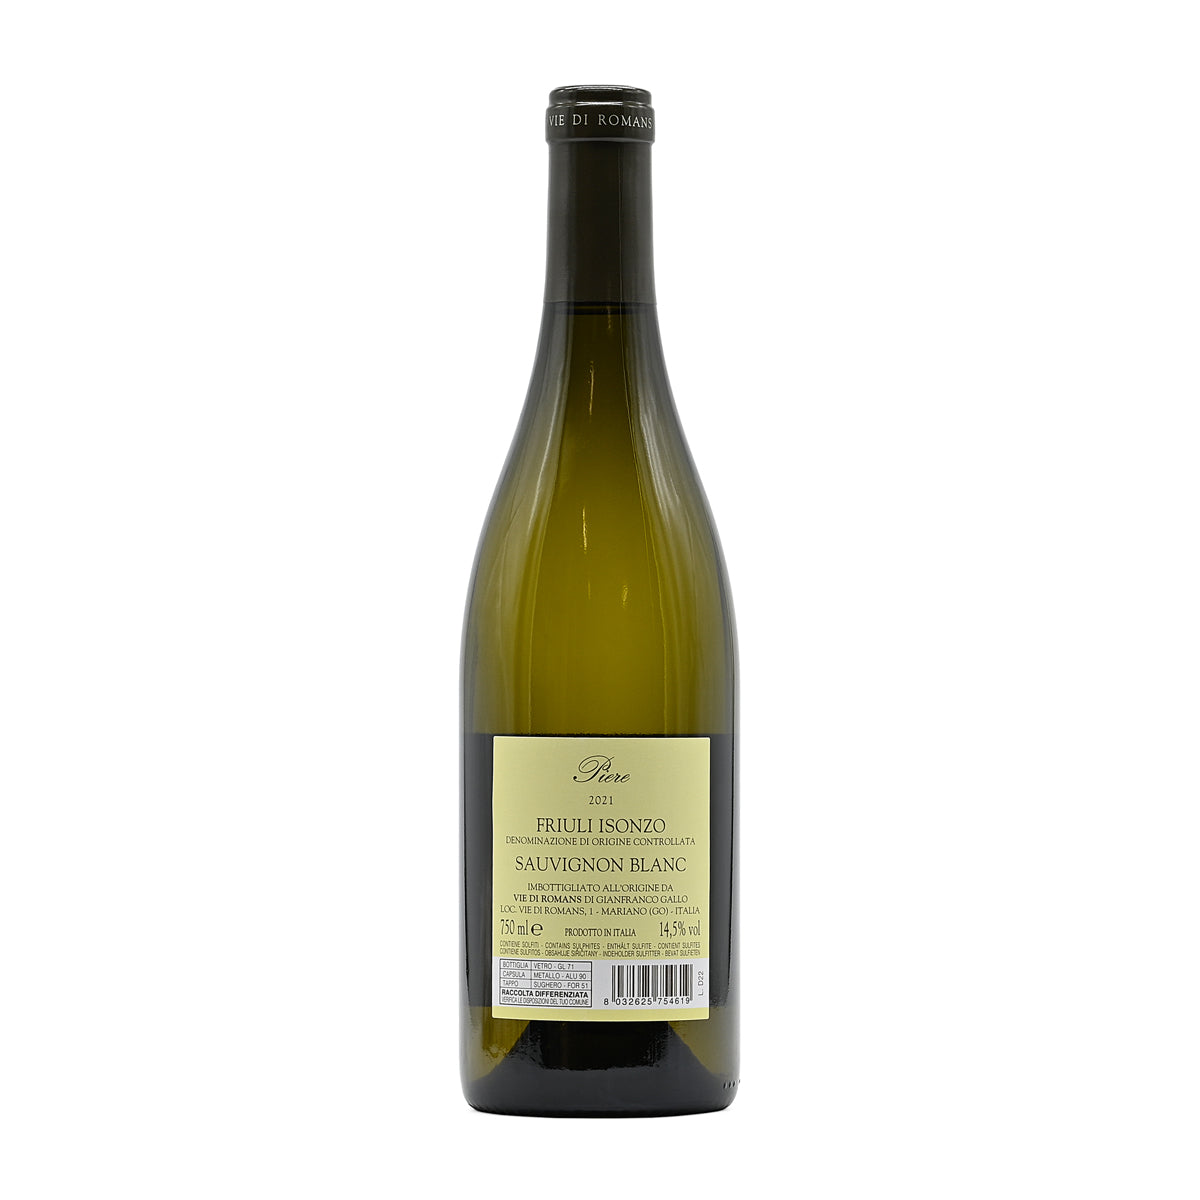 Vie di Romans Piere Sauvignon Blanc 2021, 750ml Italian white wine, made from Sauvignon Blanc, from Friuli Isonzo DOC, Friuli-Venezia Giulia, Italy – GDV Fine Wines, Hong Kong